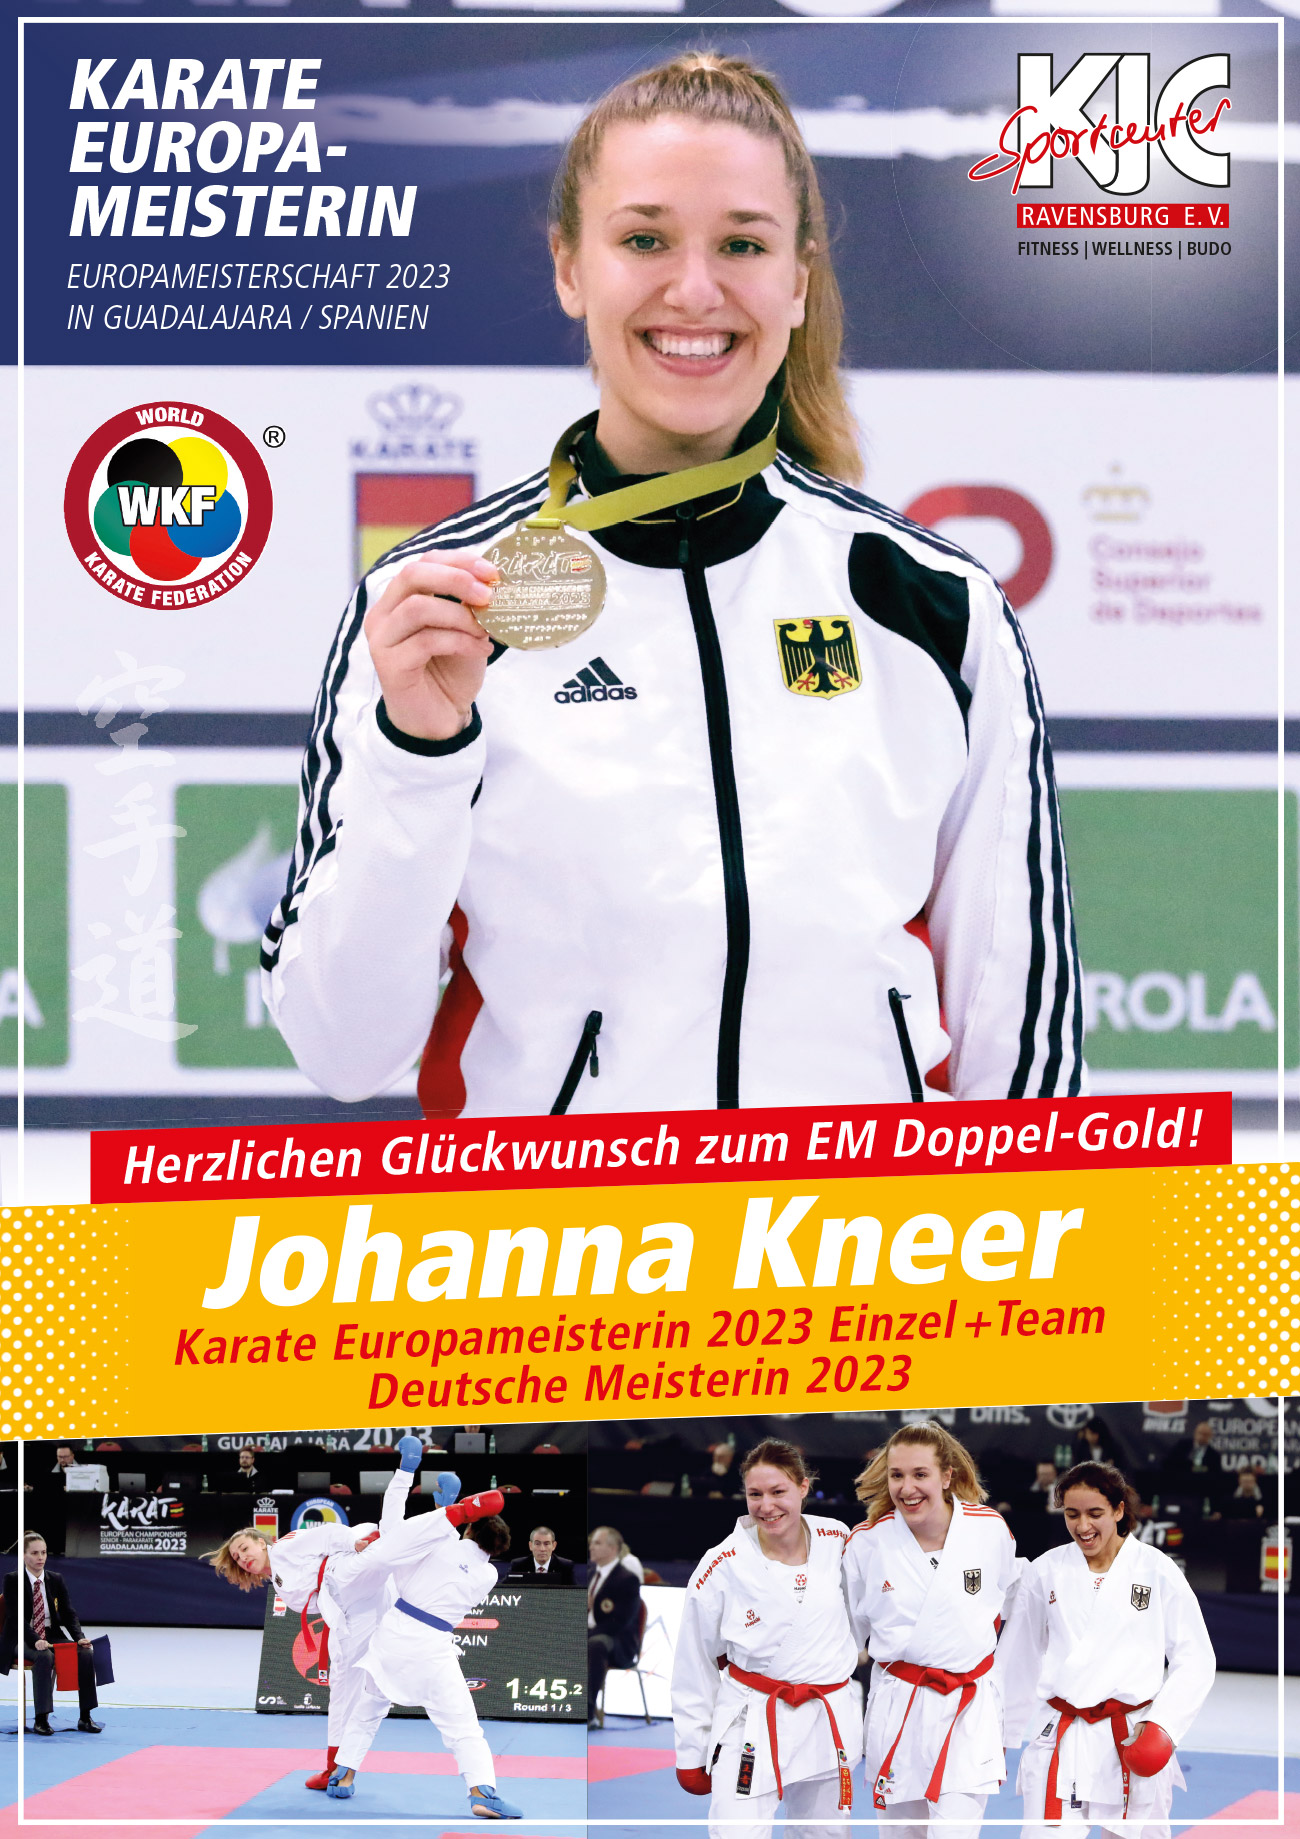 Johanna Kneer – Doppel Europameisterin 2023